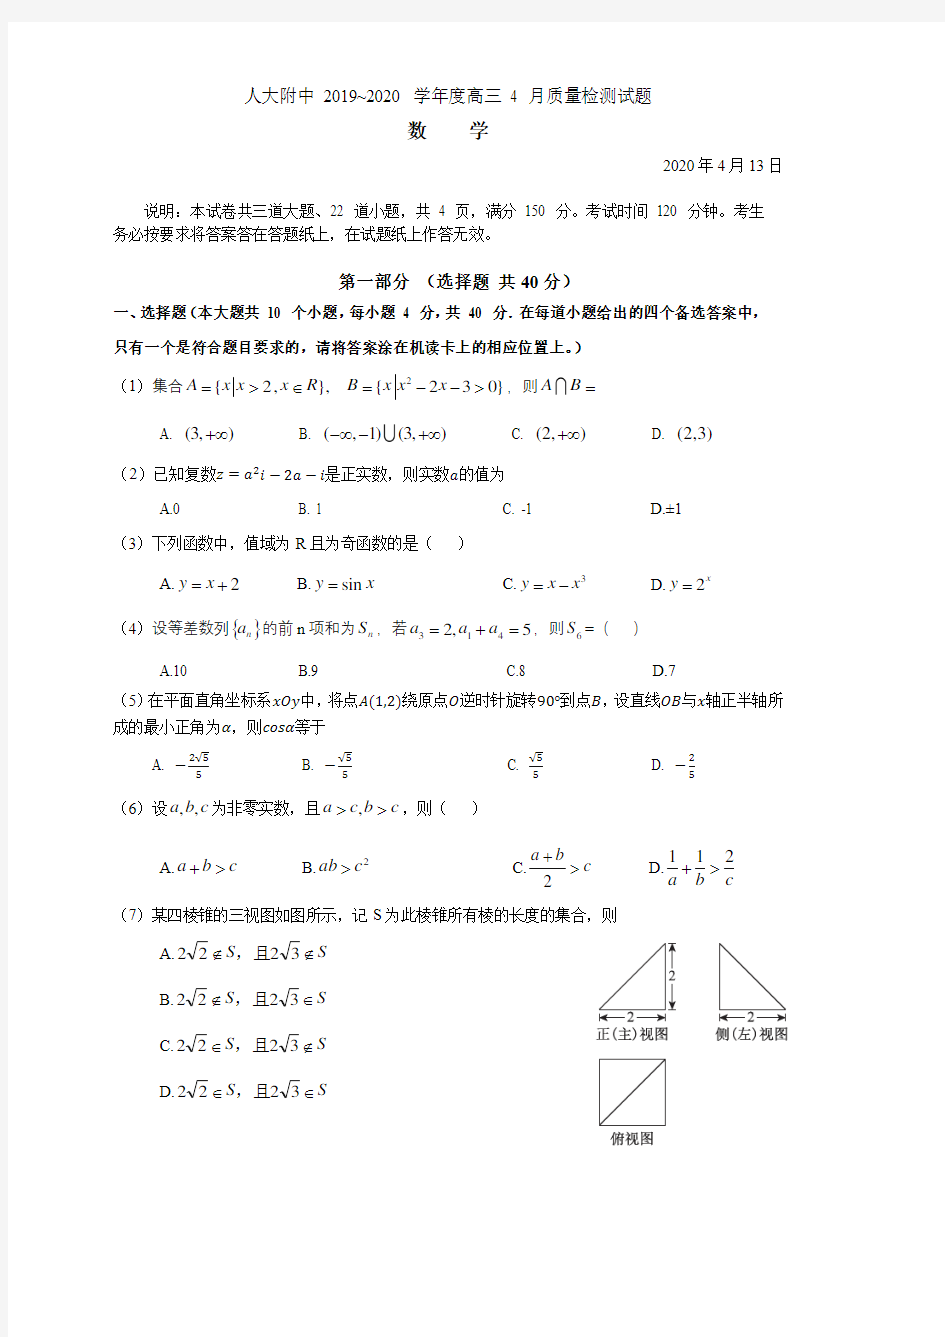 人大附中2020届高三数学4月考试题+参考答案(pdf 版)